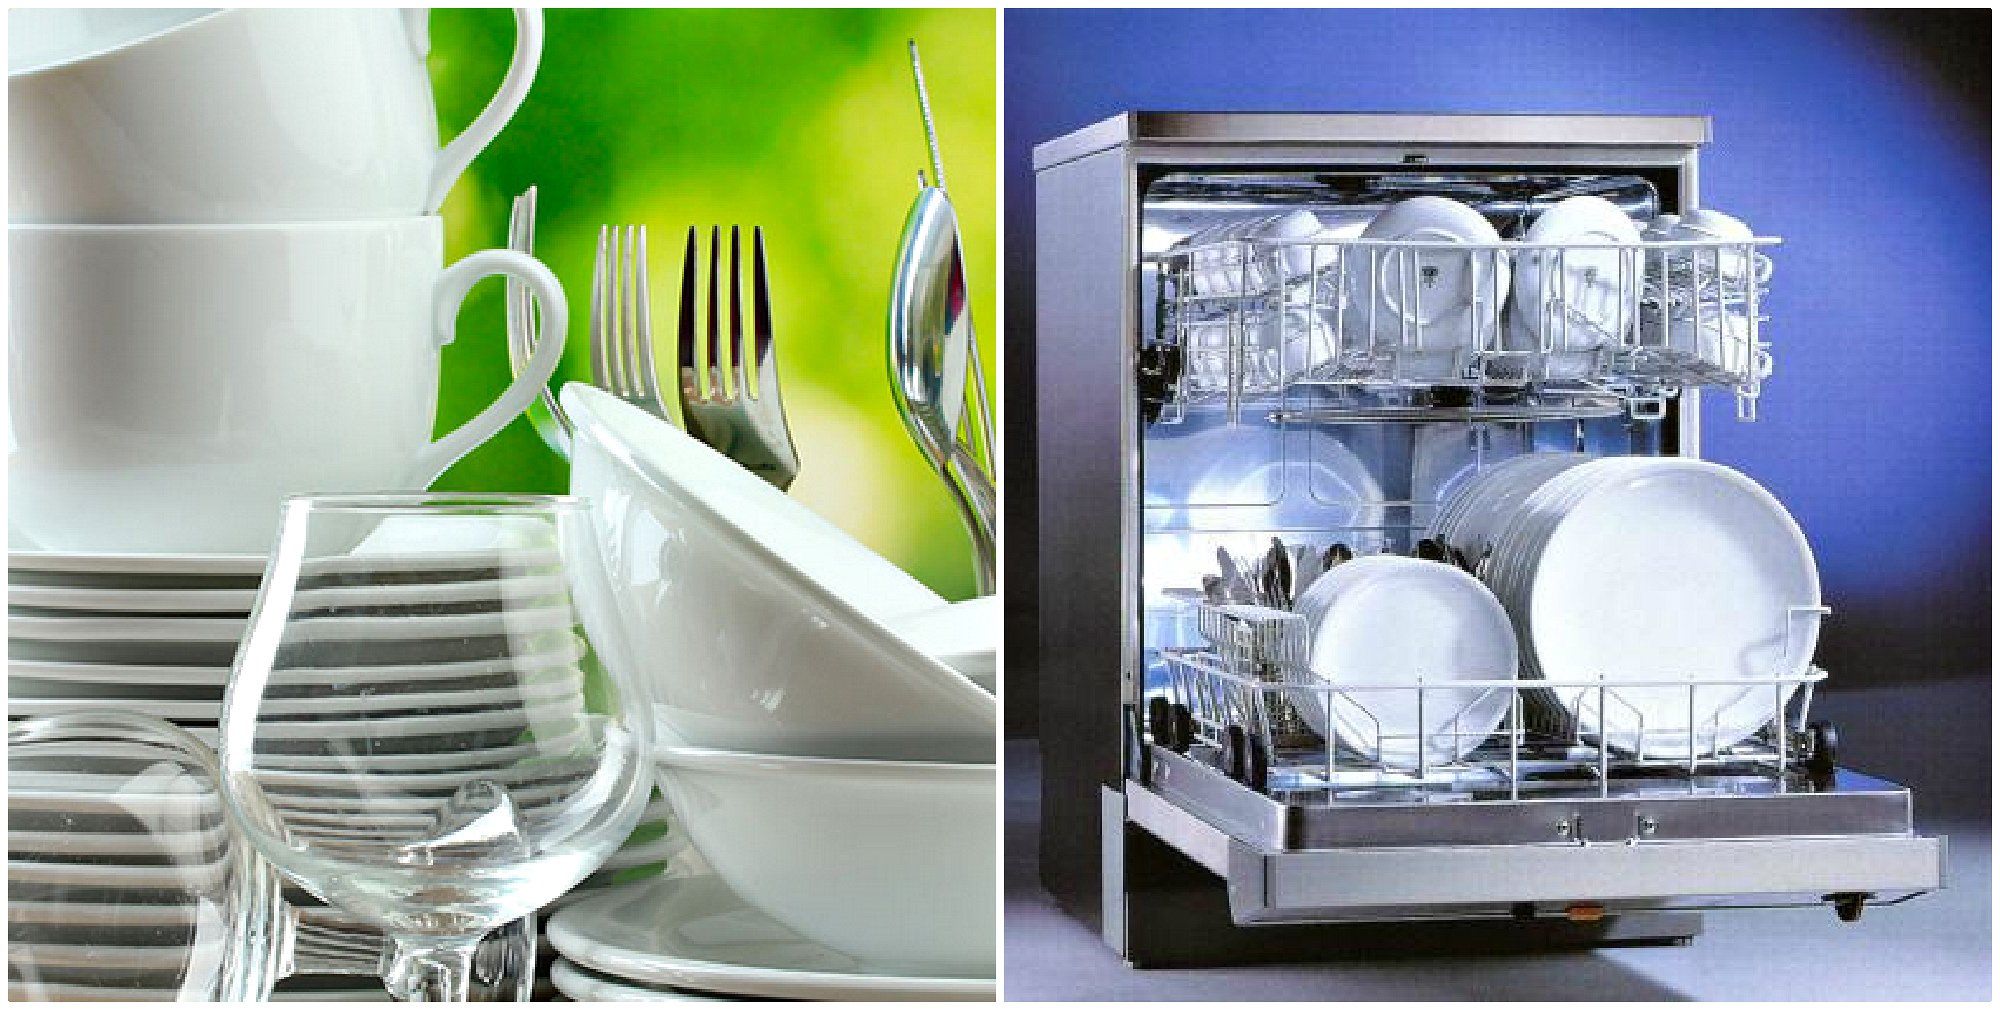 Посудомоечная машина жесткая вода. Посудомоечная посуда. Для посудомоечных машин. Посуда в посудомоечной машине. Чистая посуда в посудомойке.